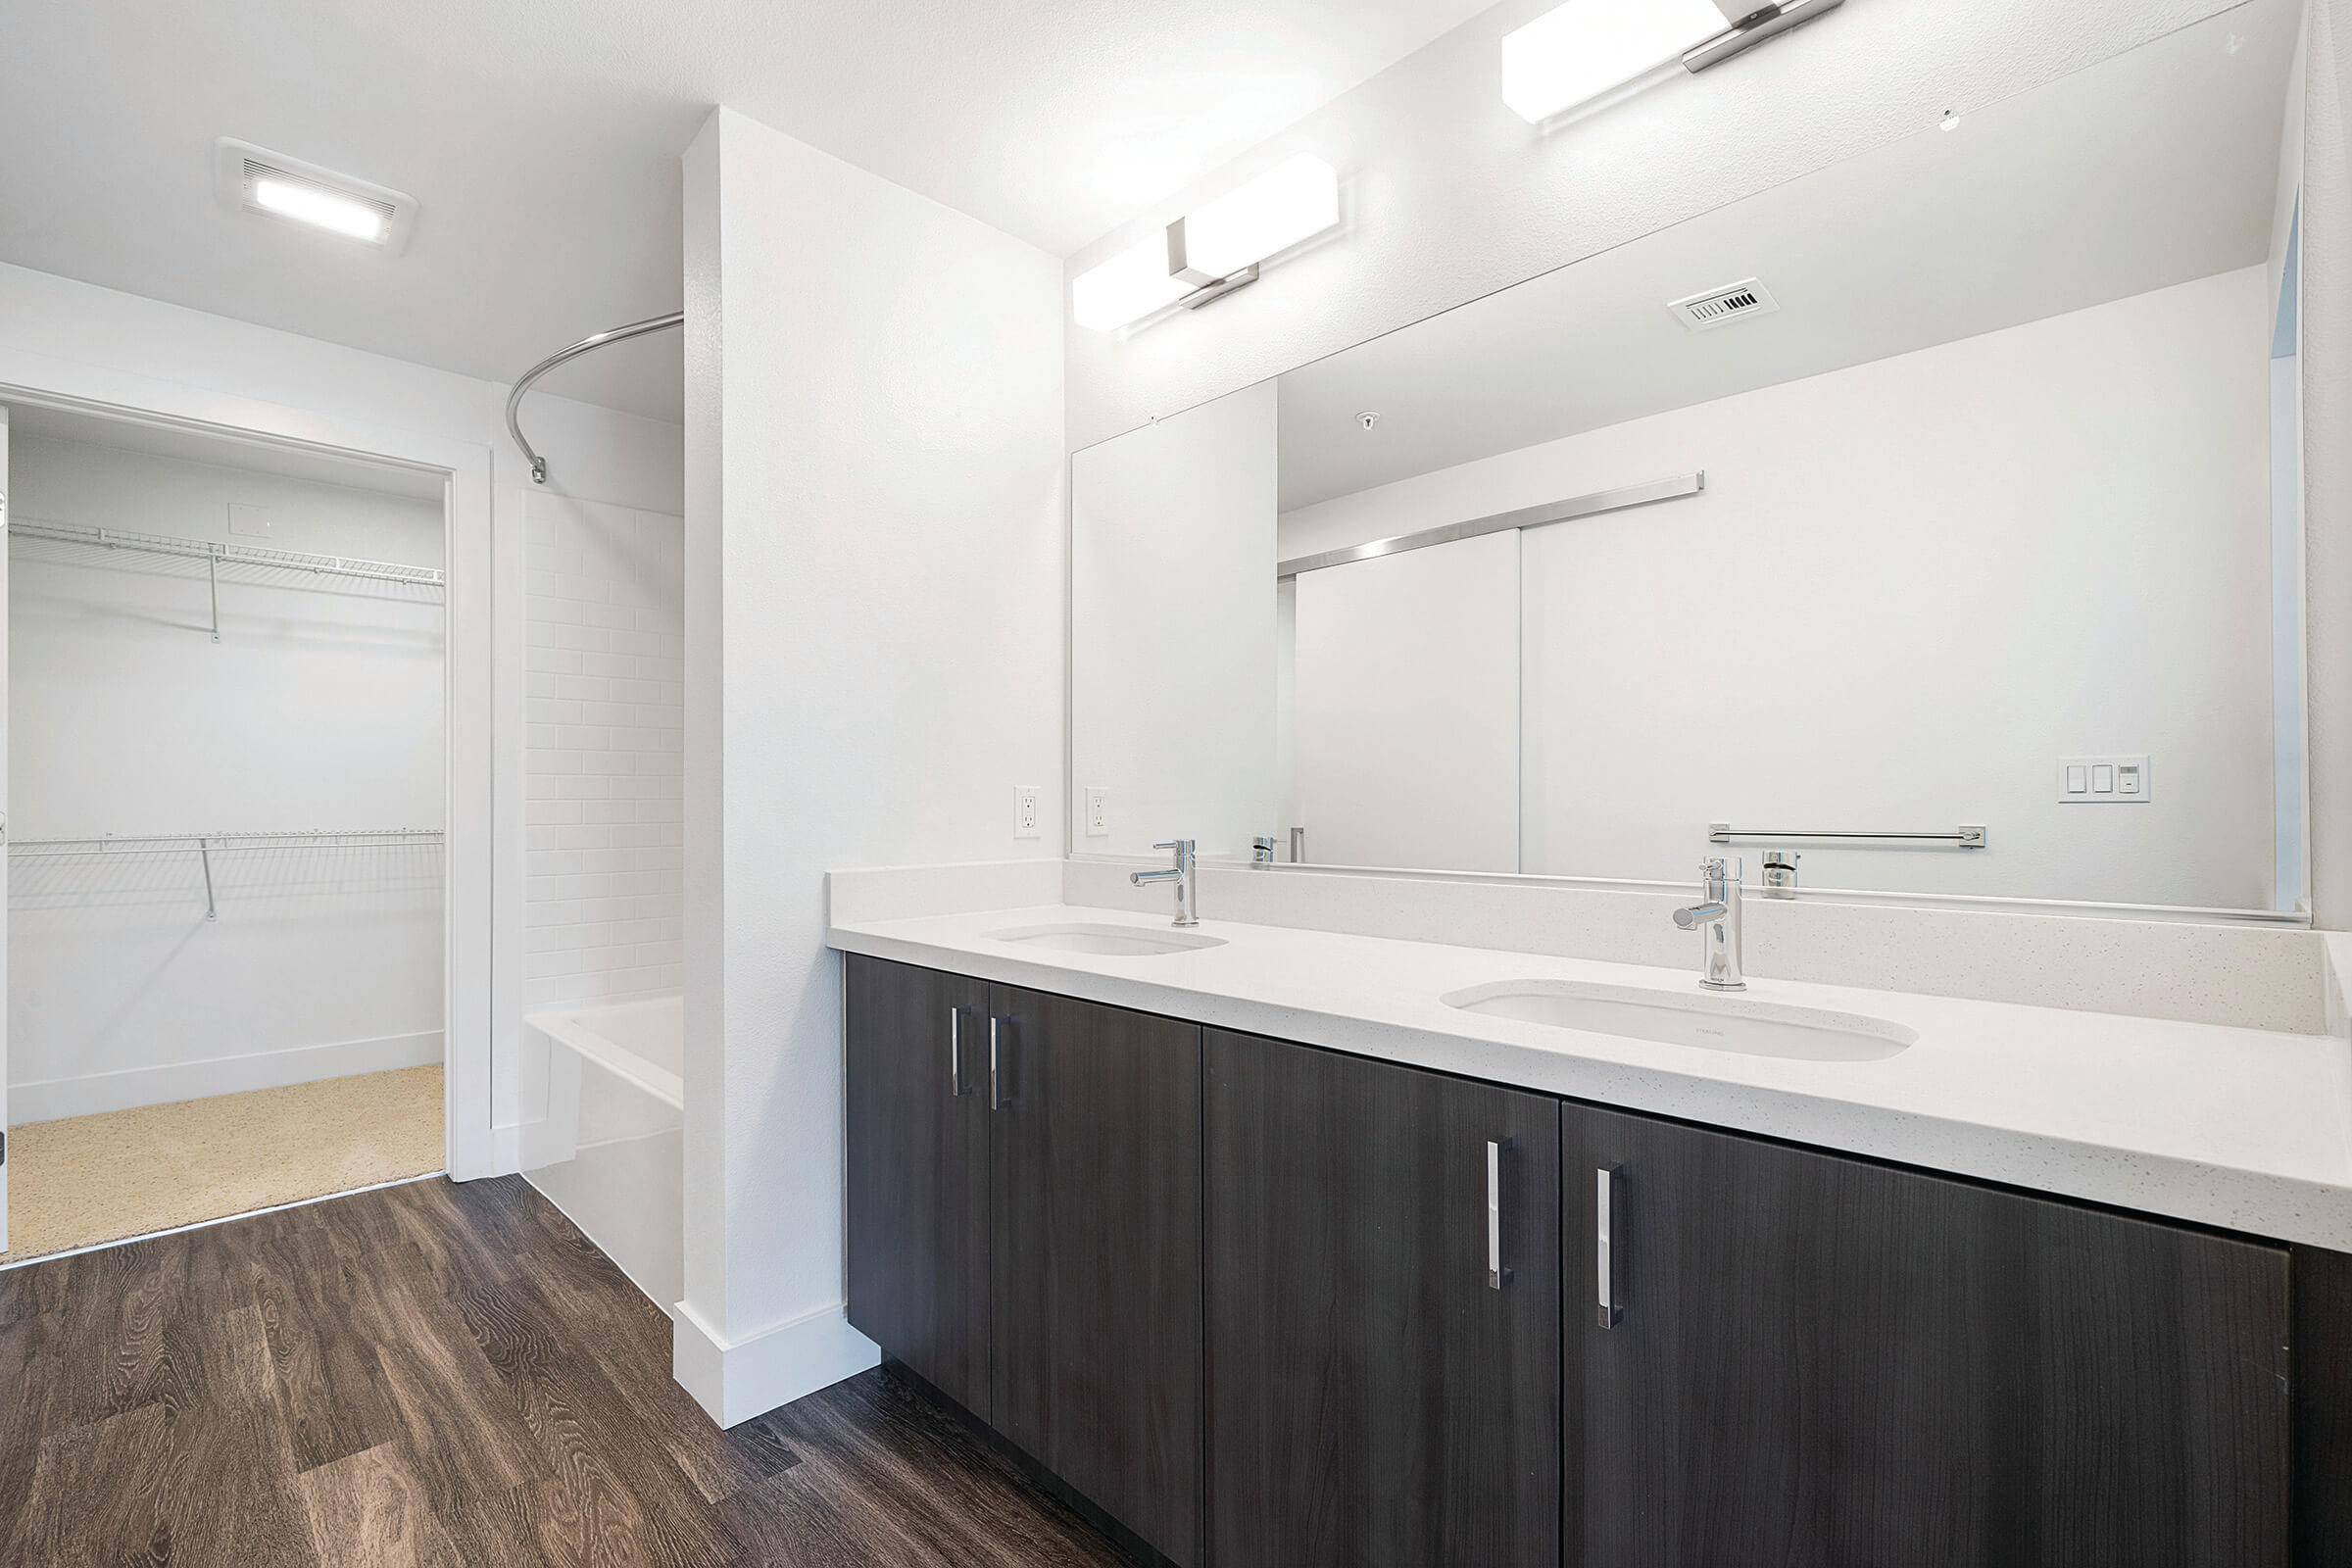 Bathroom sinks with open walk-in closet door